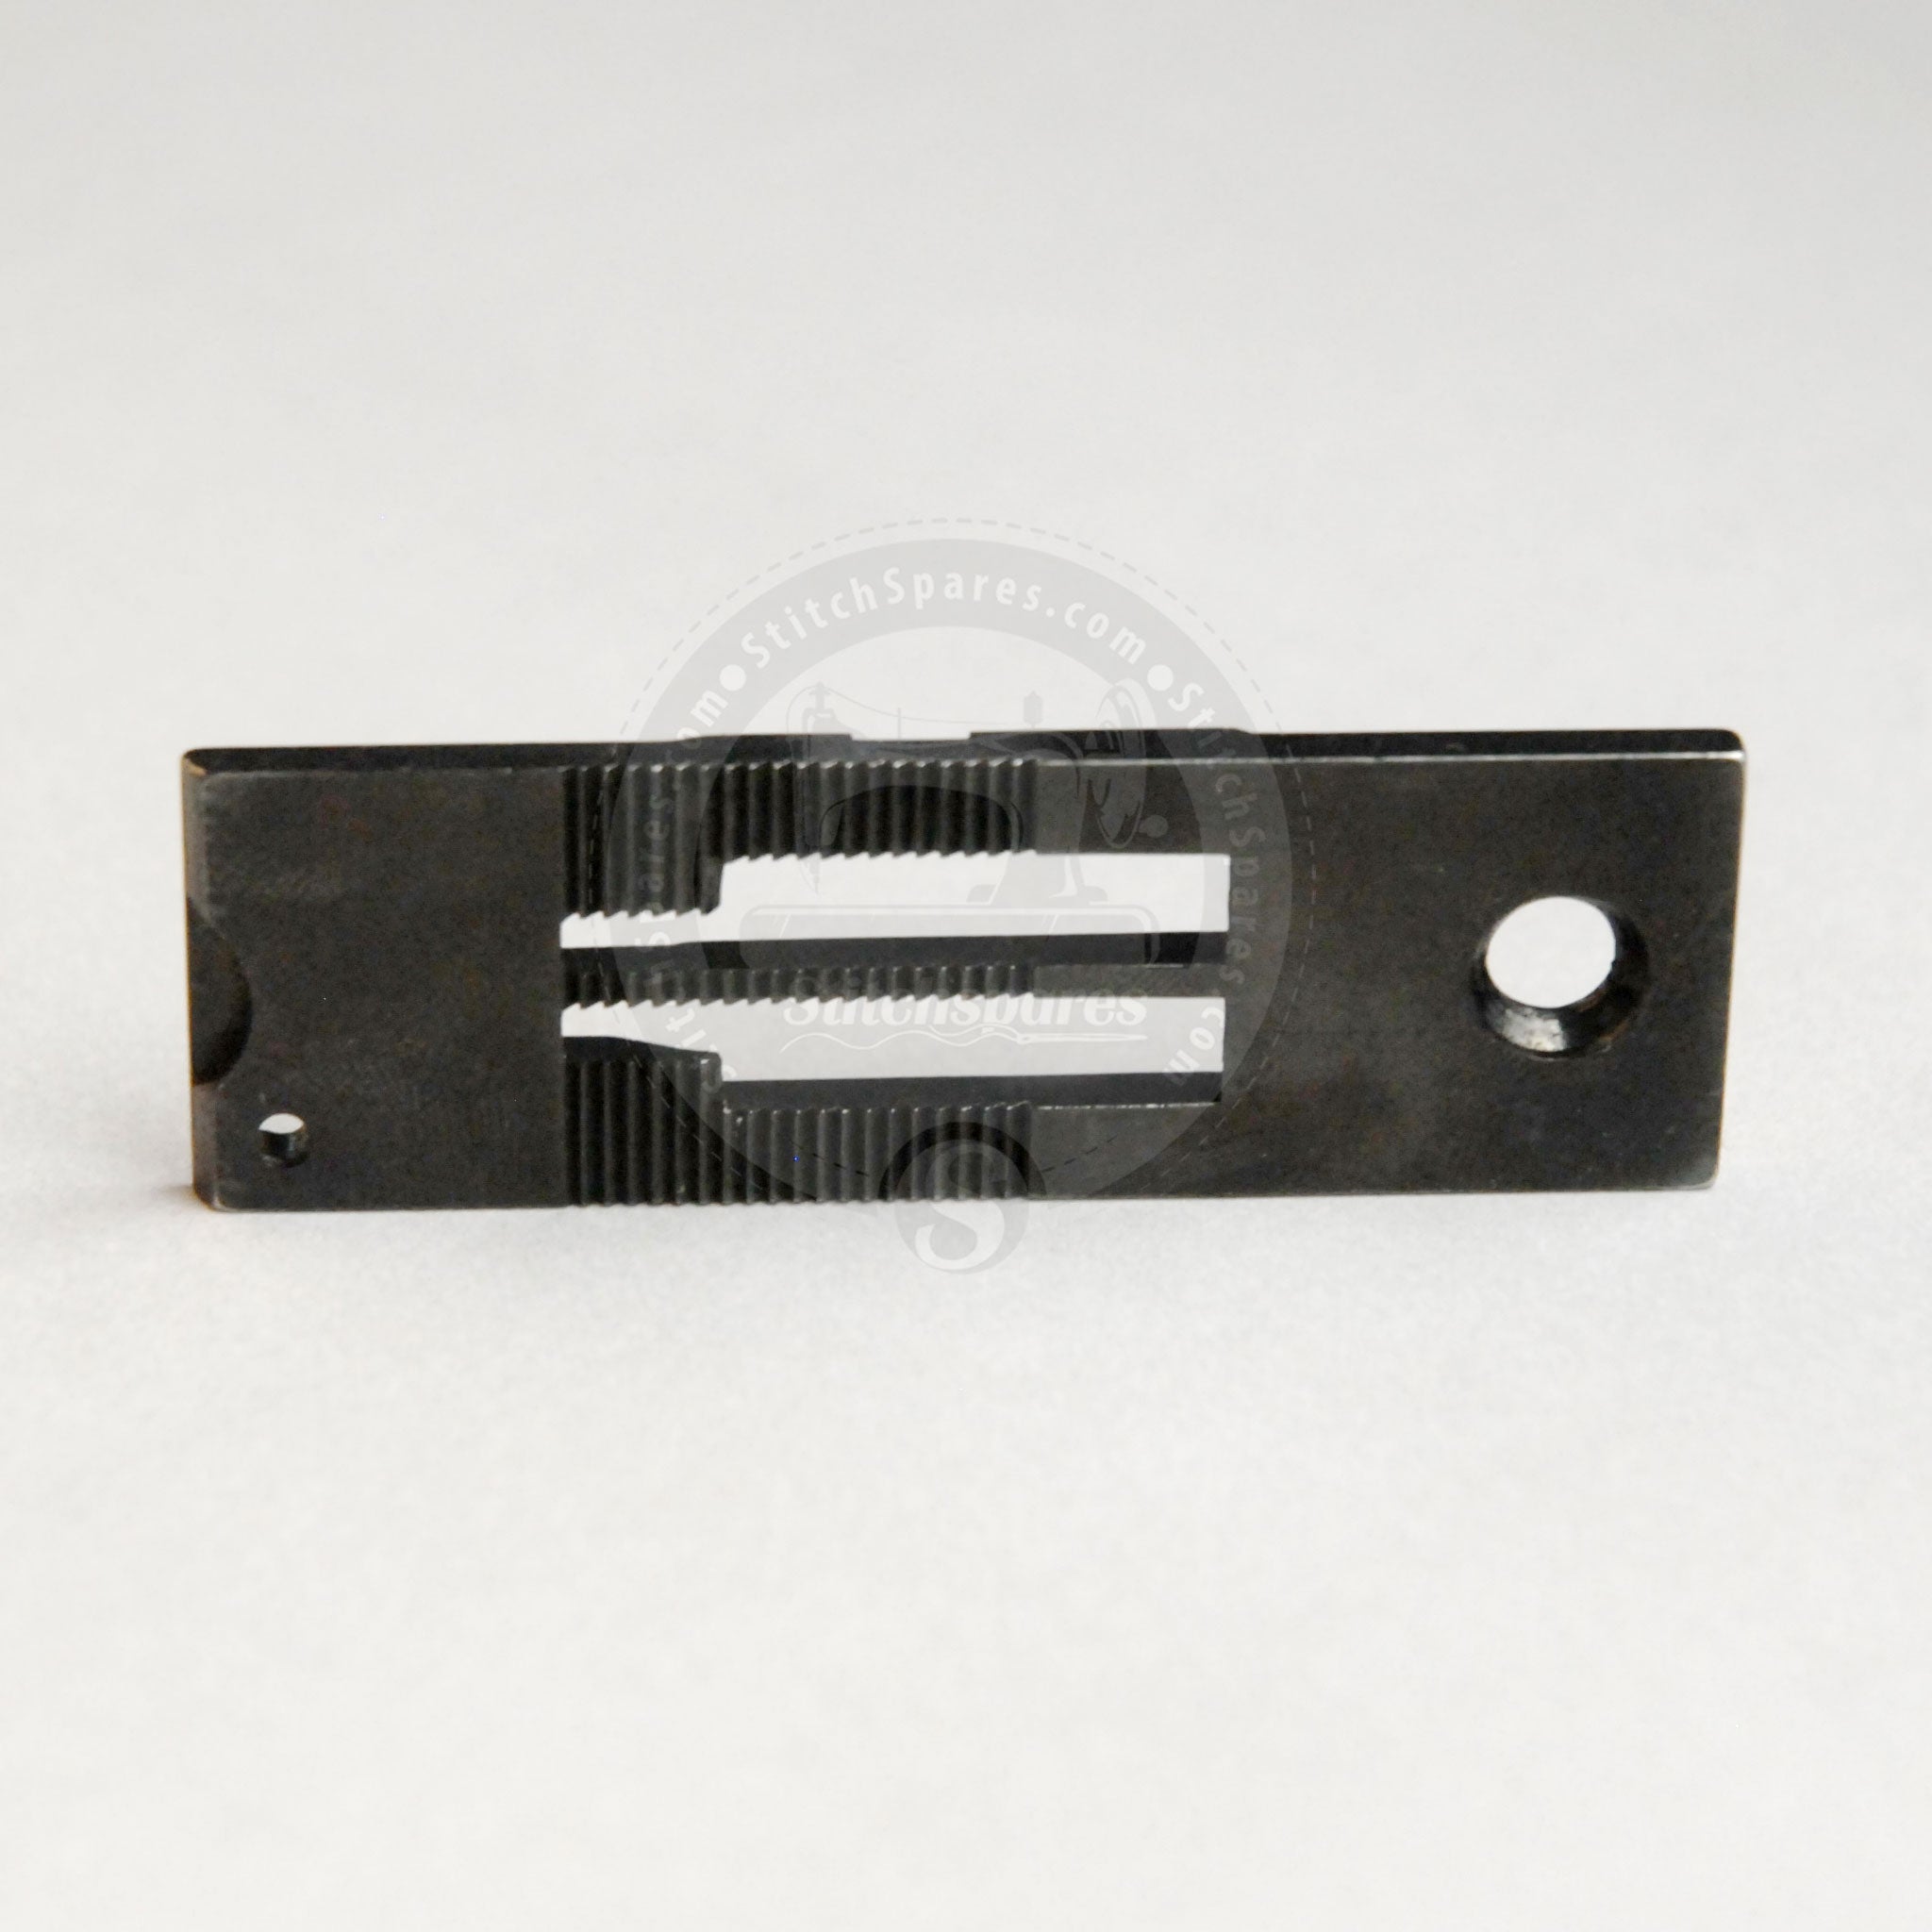 Placa de aguja 842 de 1 a 4 pulgadas (6.4 mm) Brother LT2-B842 Máquina de pespunte de doble aguja